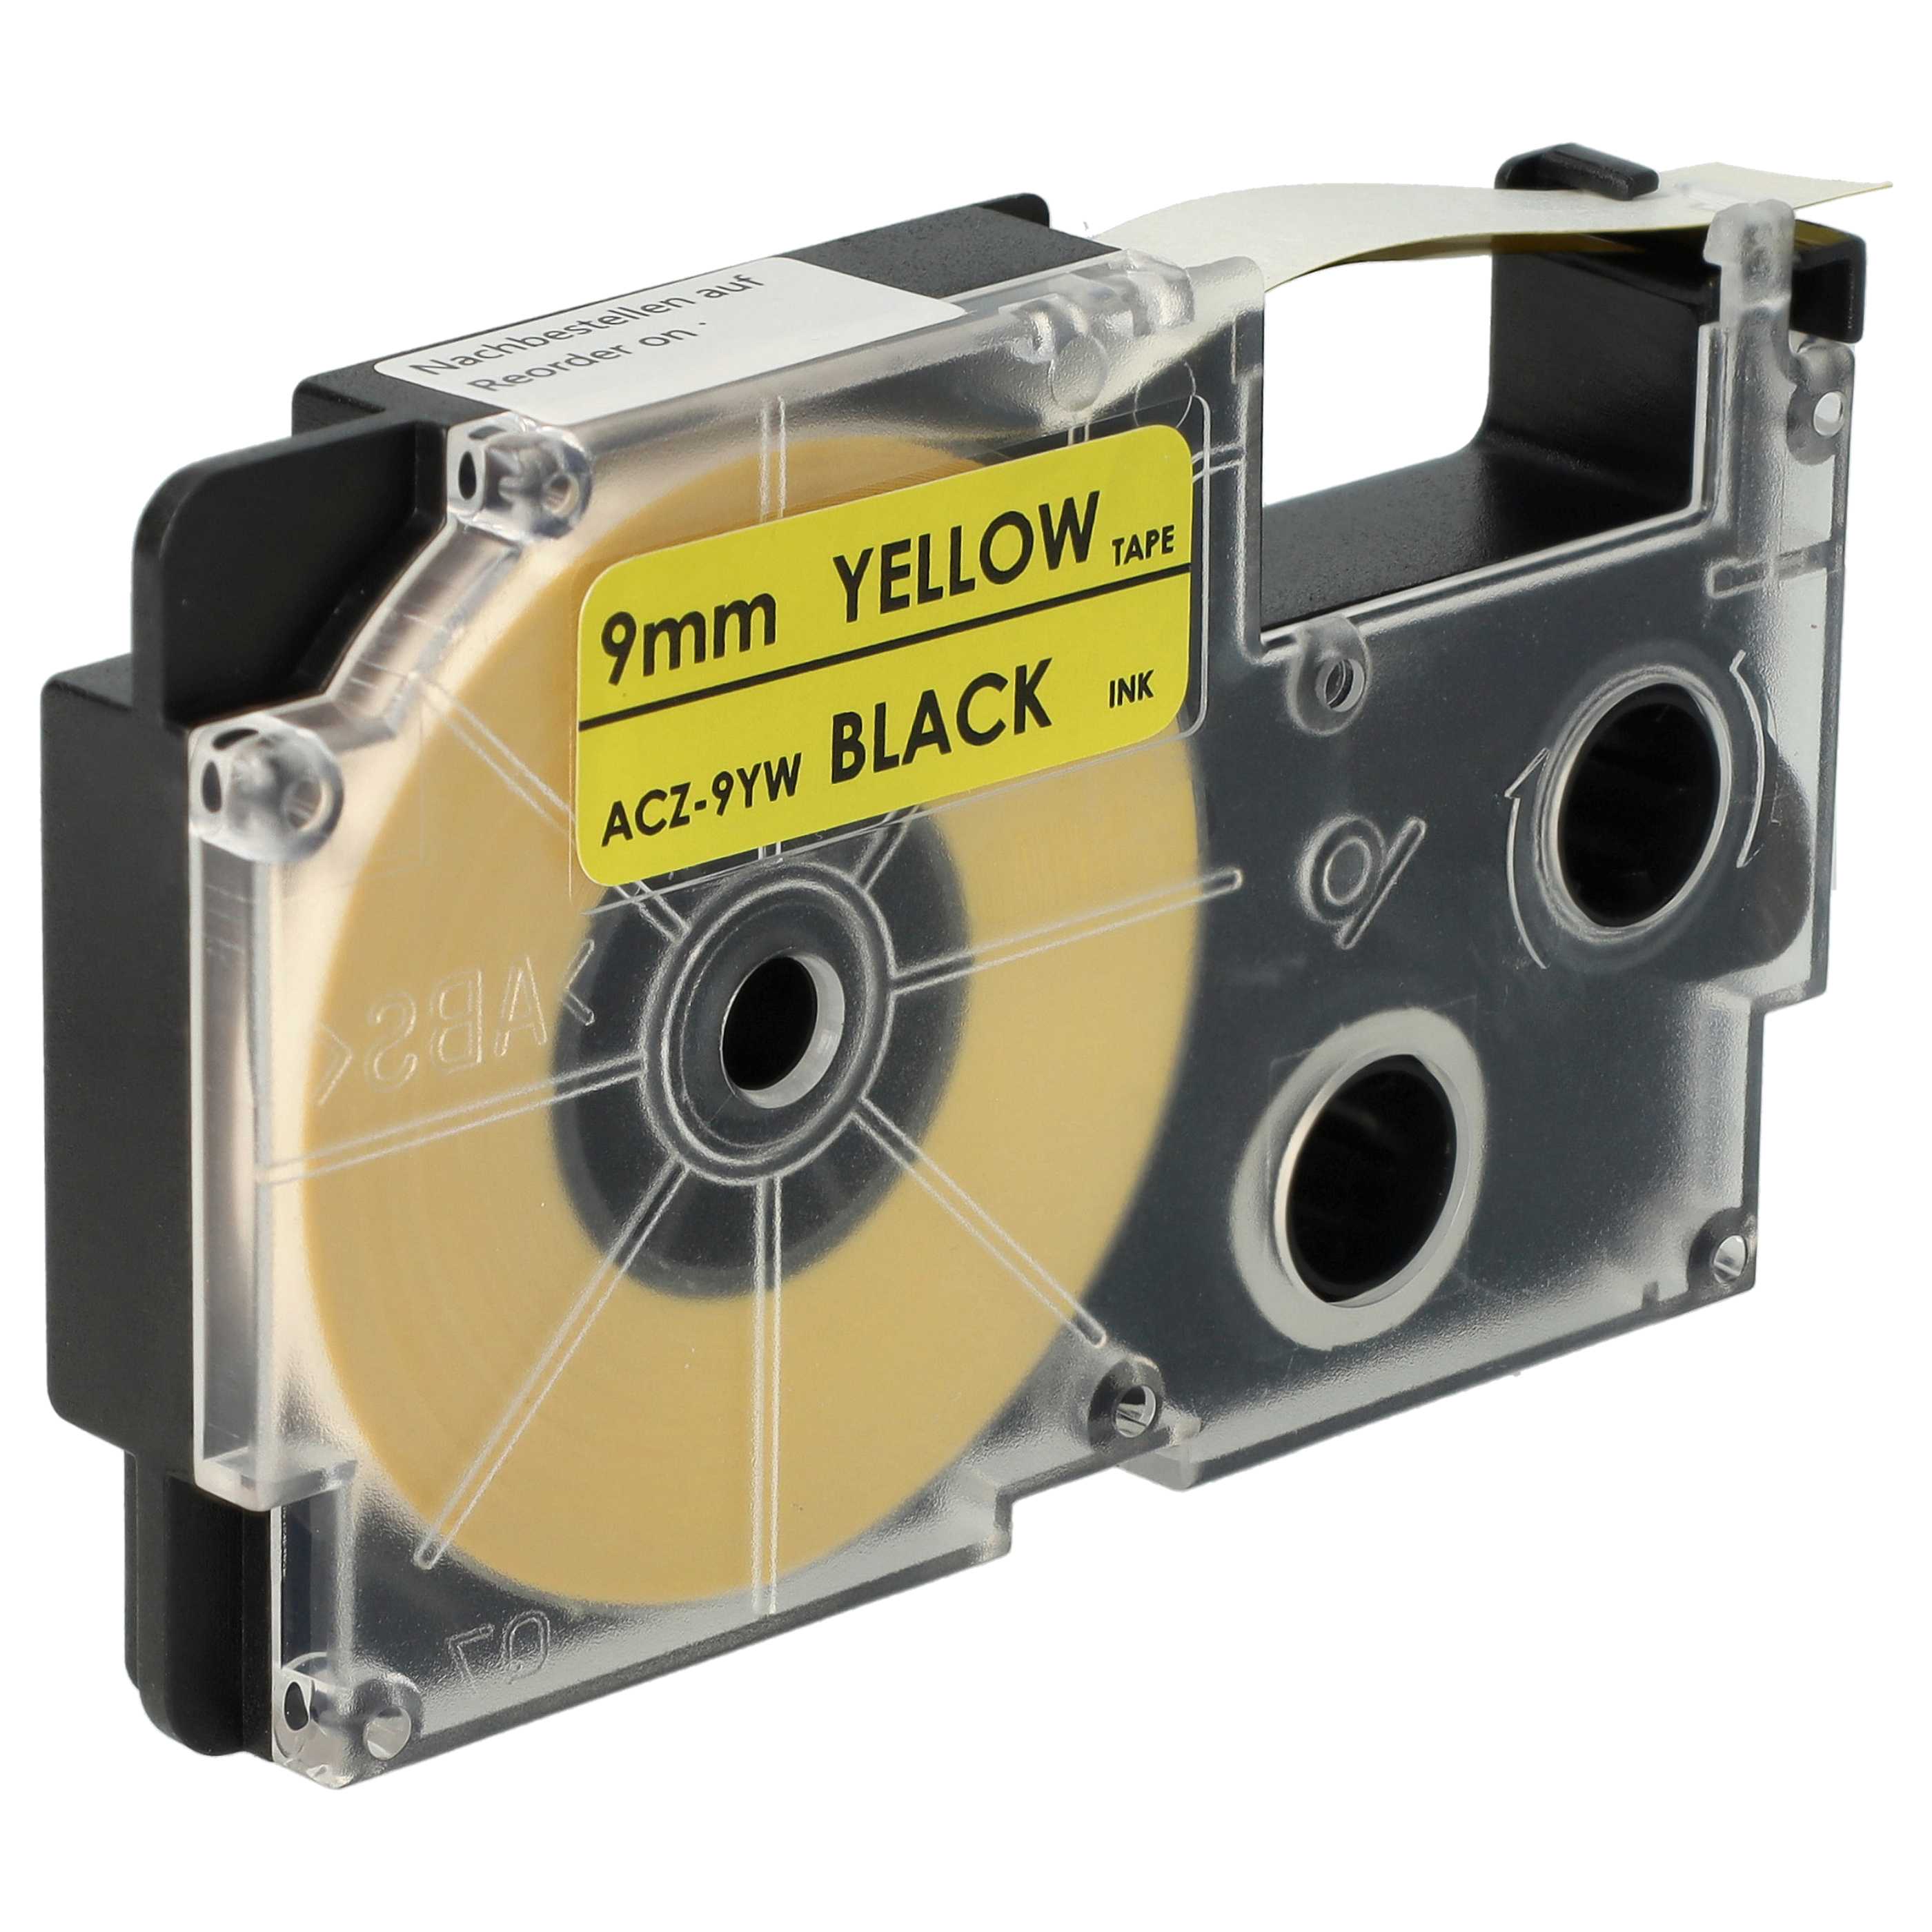 Cassetta nastro sostituisce Casio XR-9YW1 per etichettatrice Casio 9mm nero su giallo